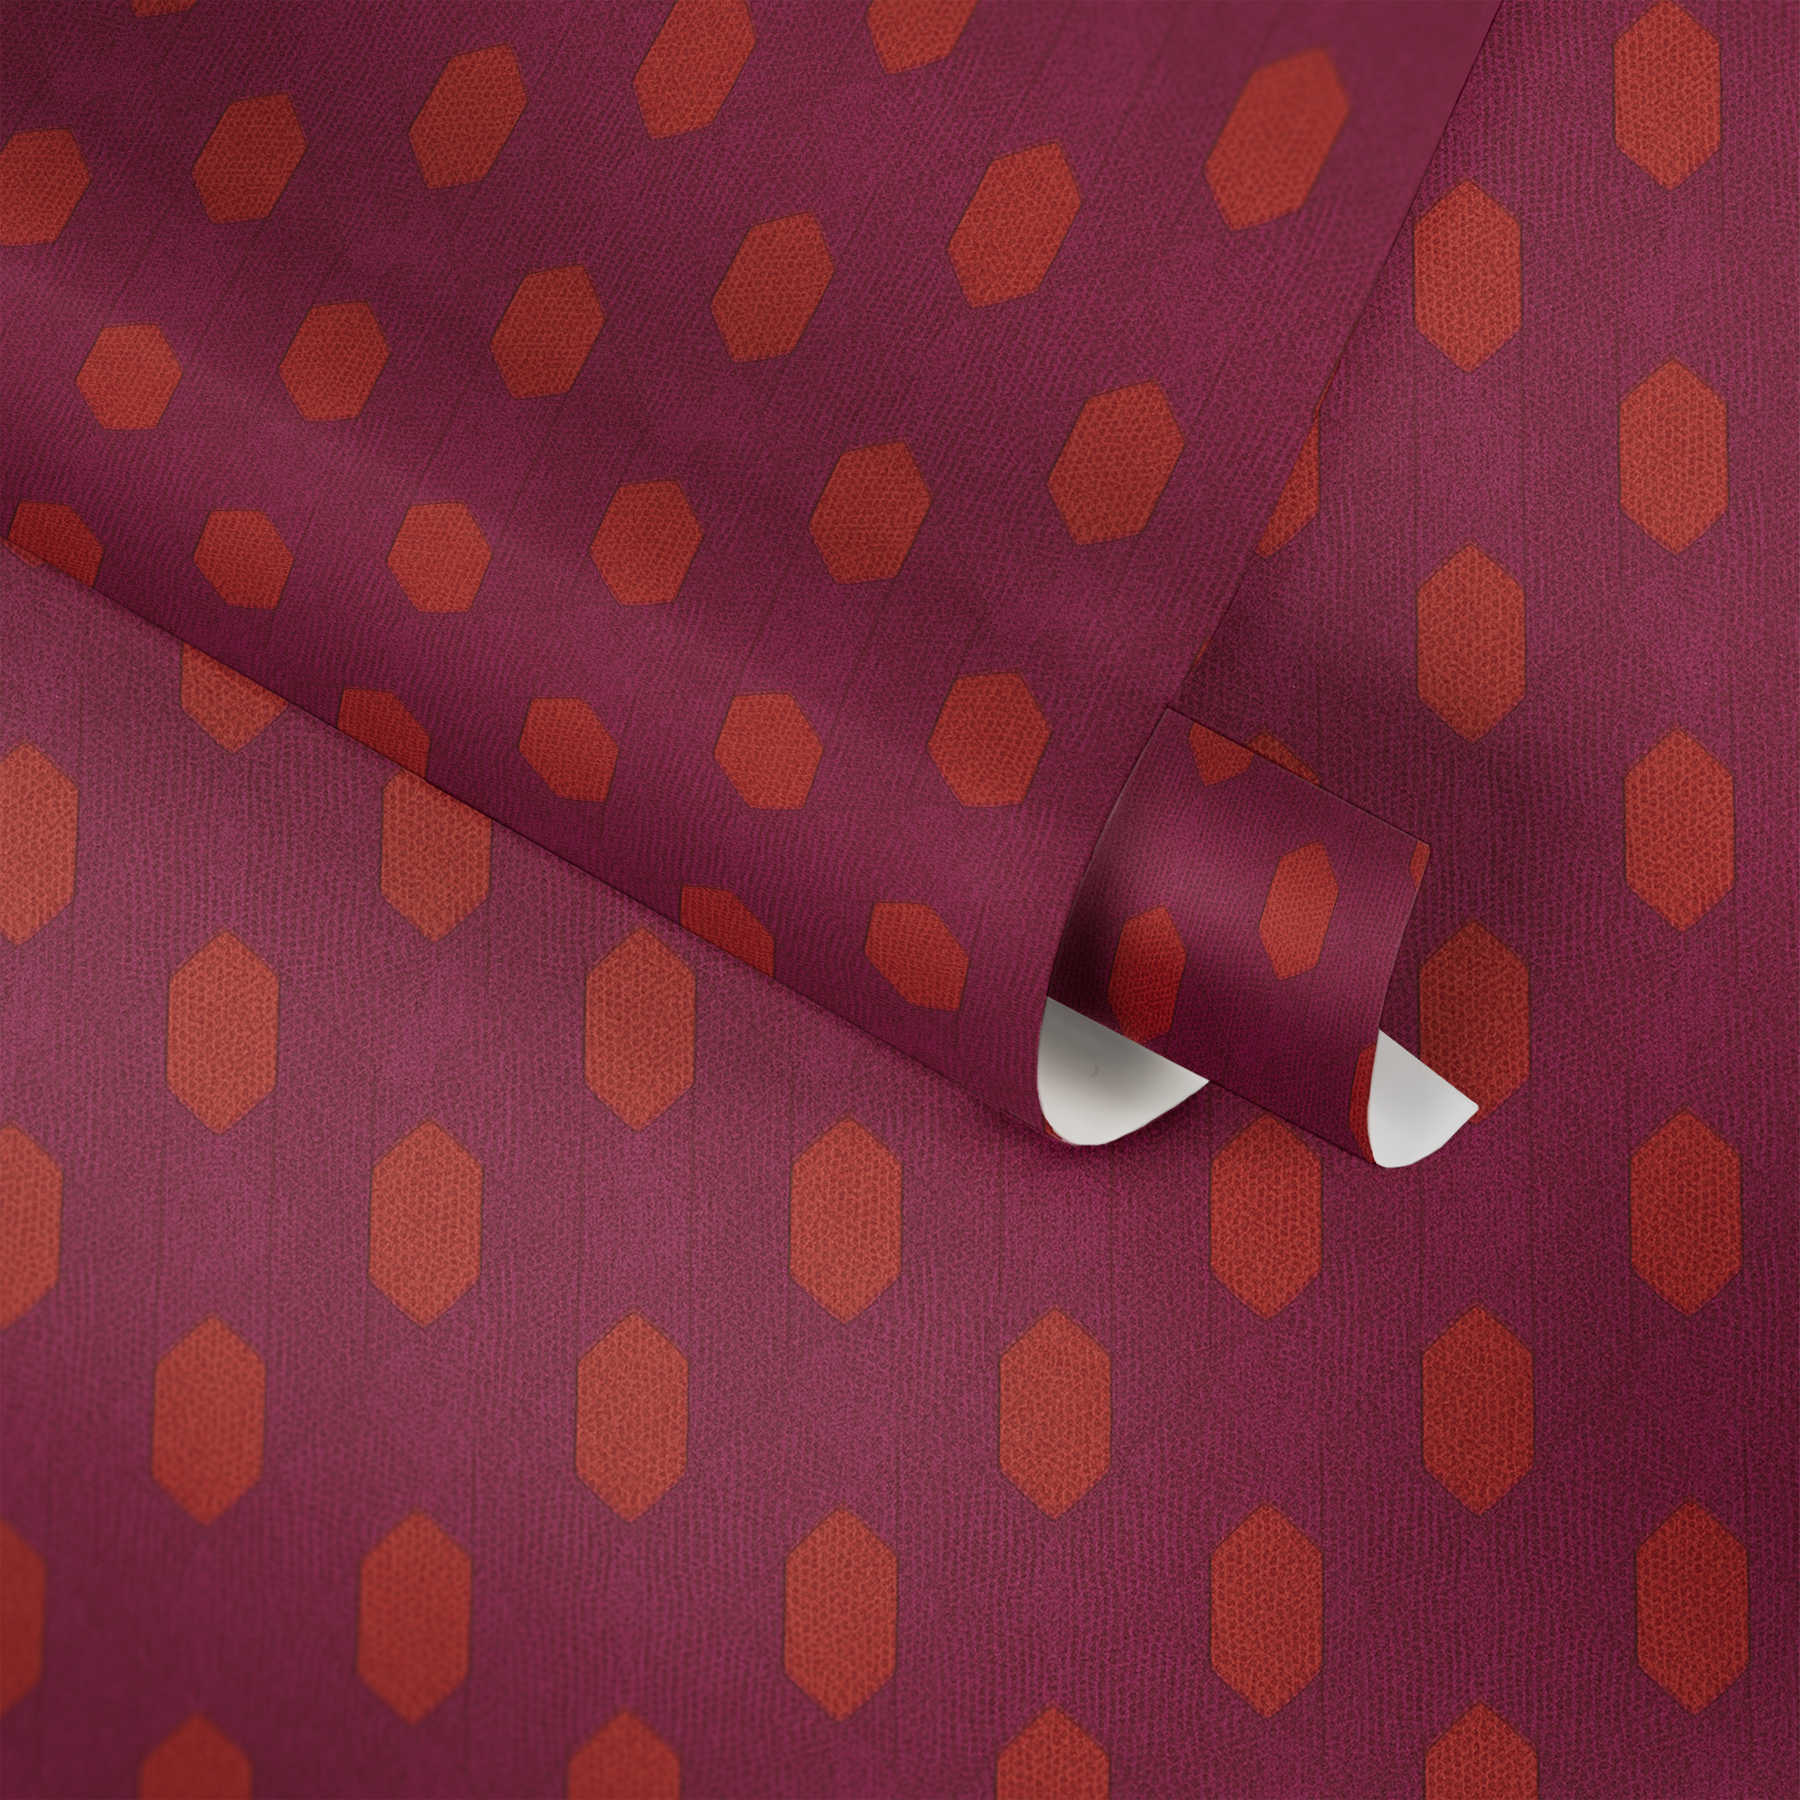             Papier peint magenta à motifs géométriques - violet, rouge, orange
        